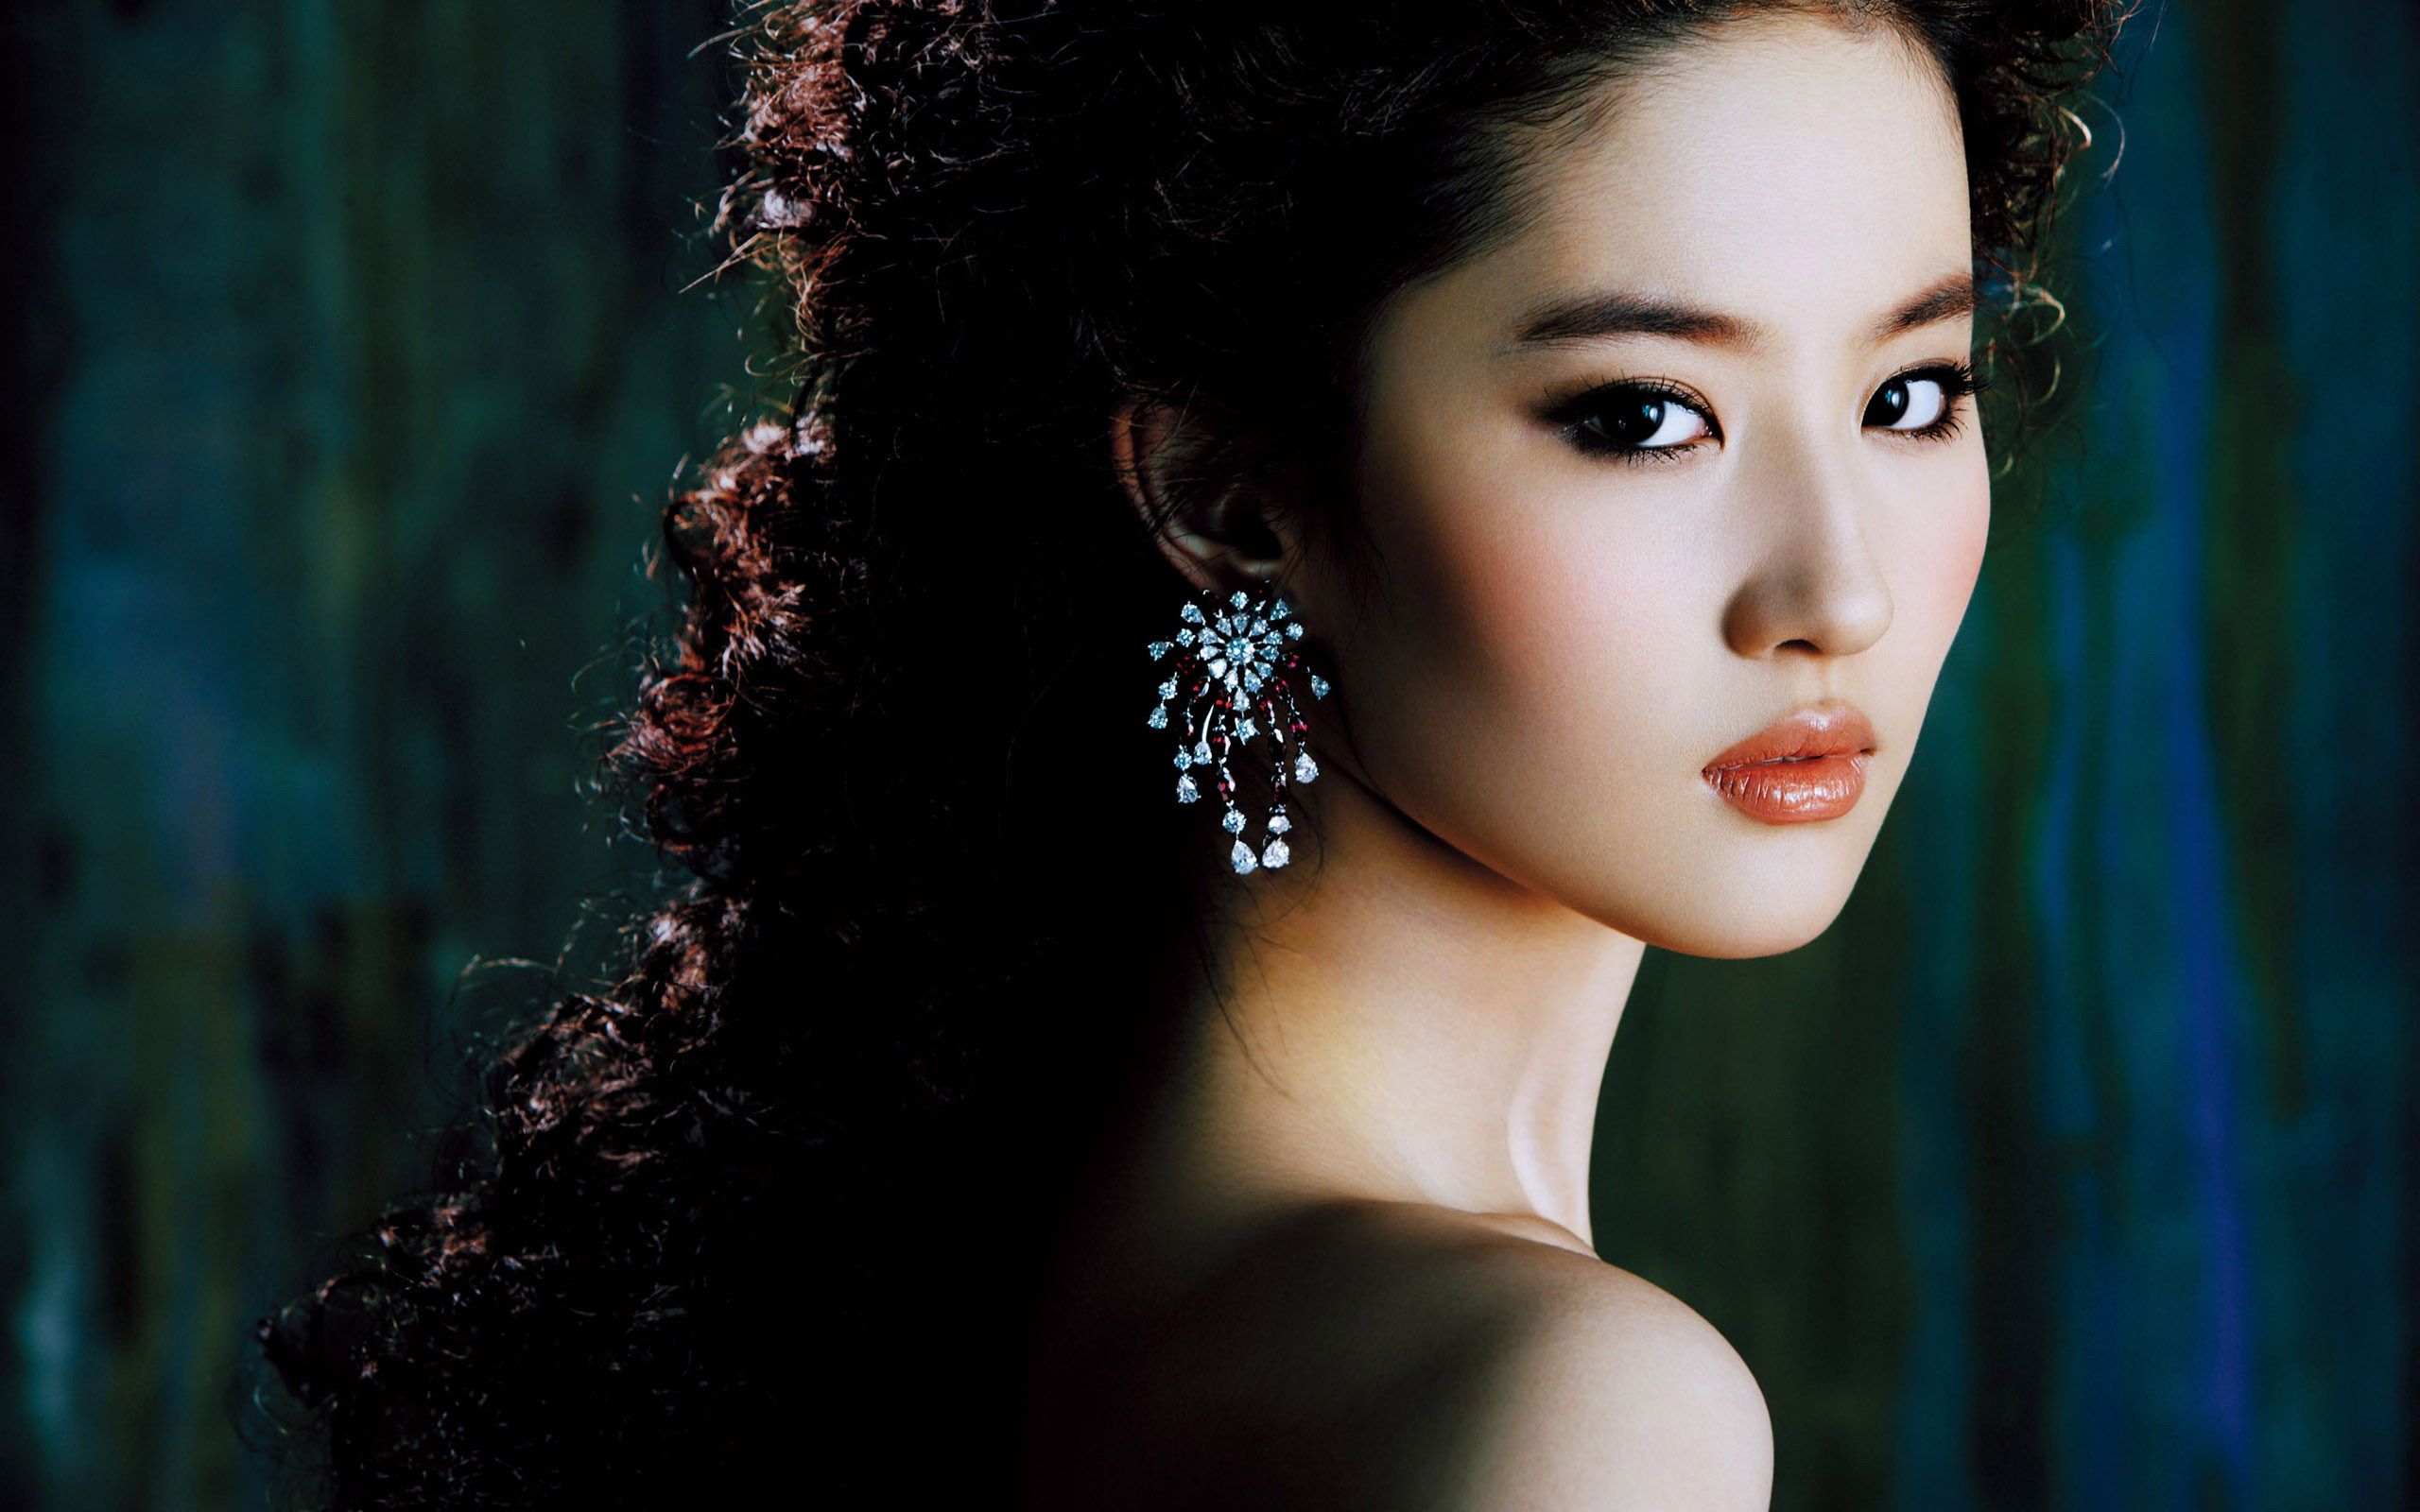 Chinese Actress Liu Yifei Wallpapers | HD Wallpapers